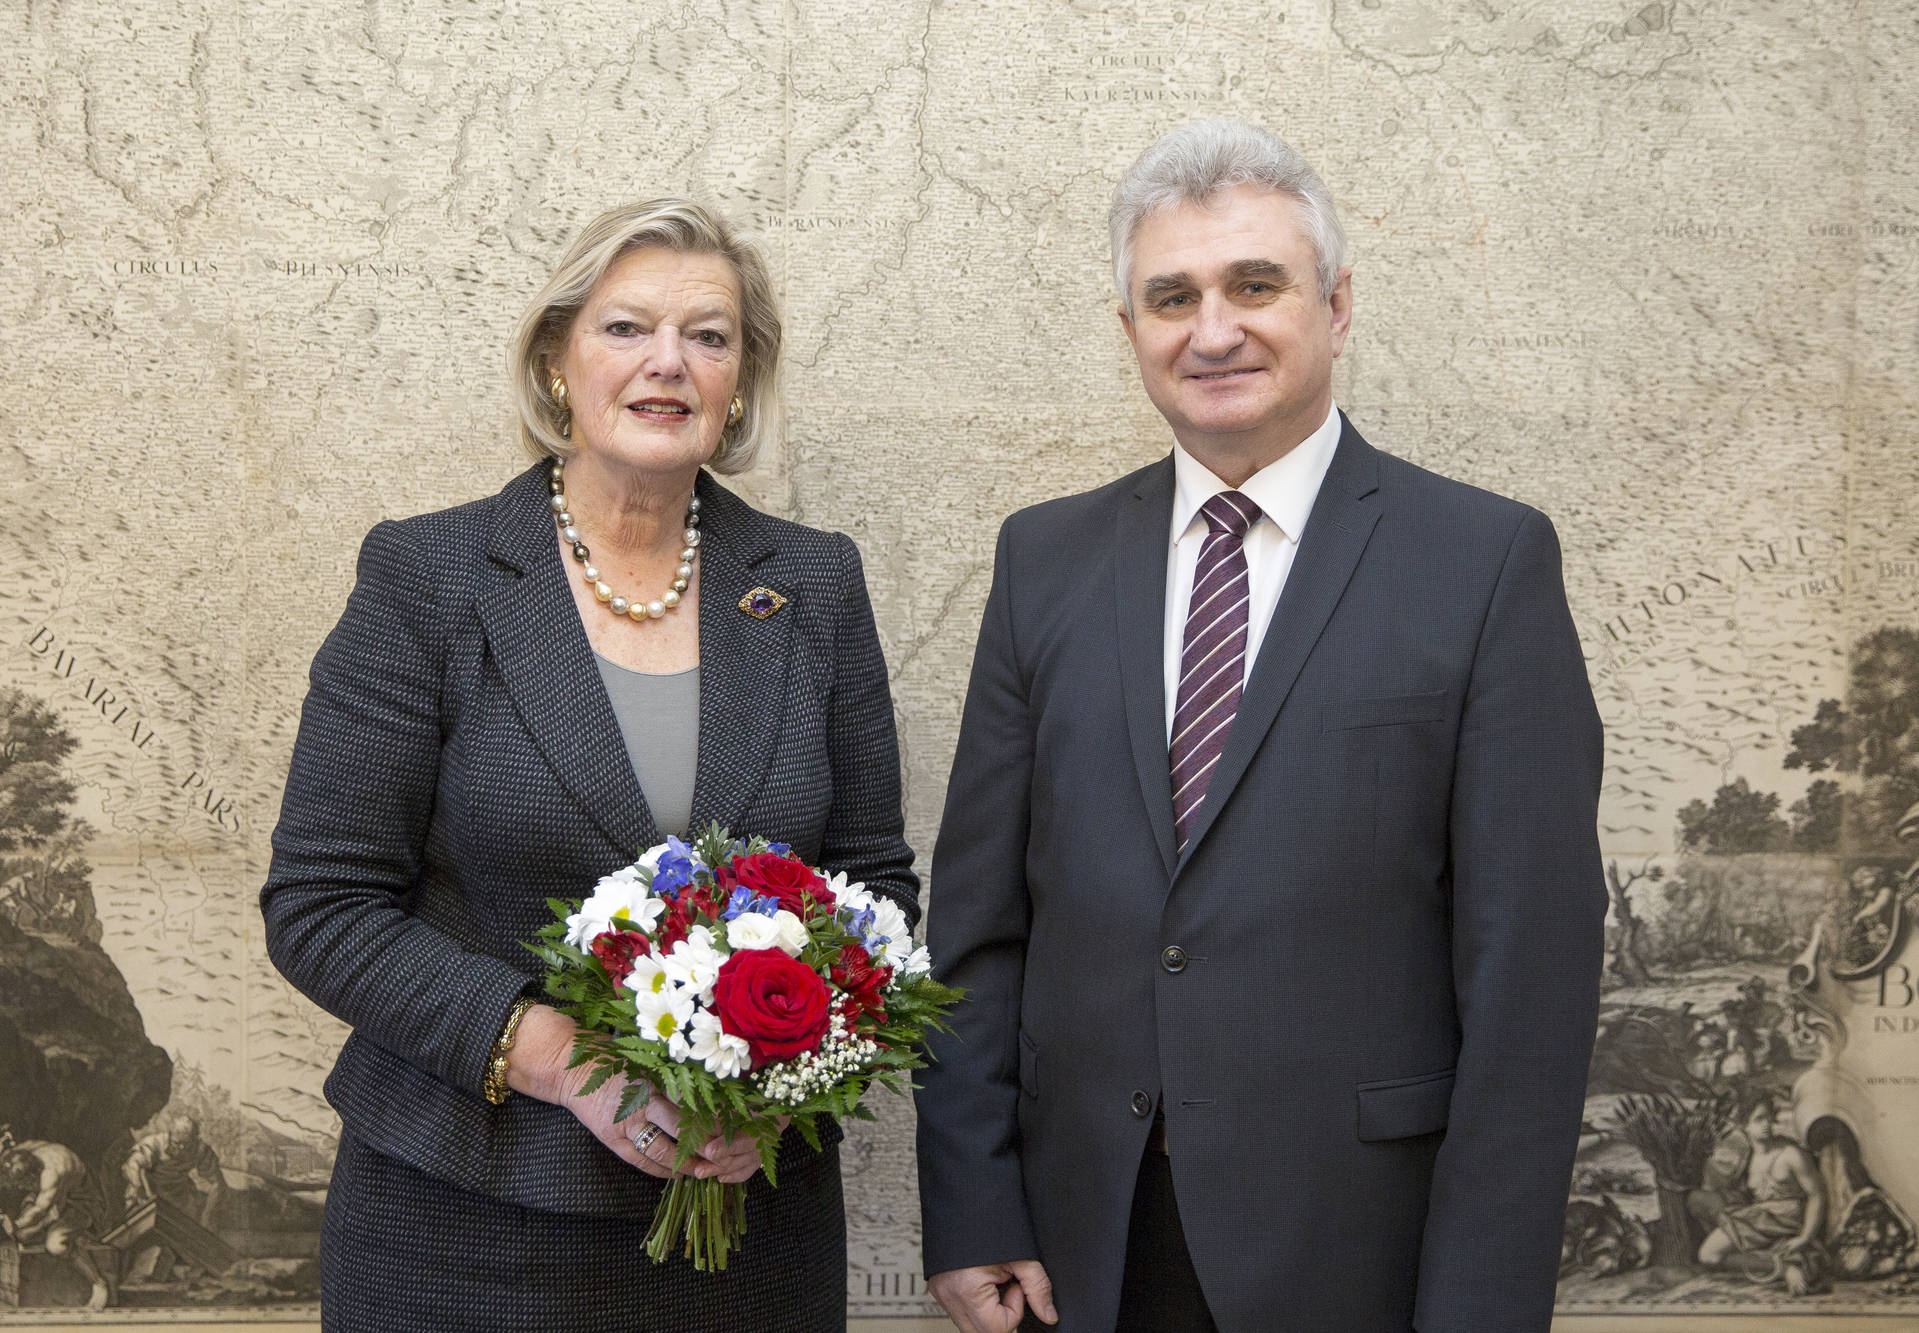 Voorzitter Eerste Kamer met Senaatsvoorzitter Štech